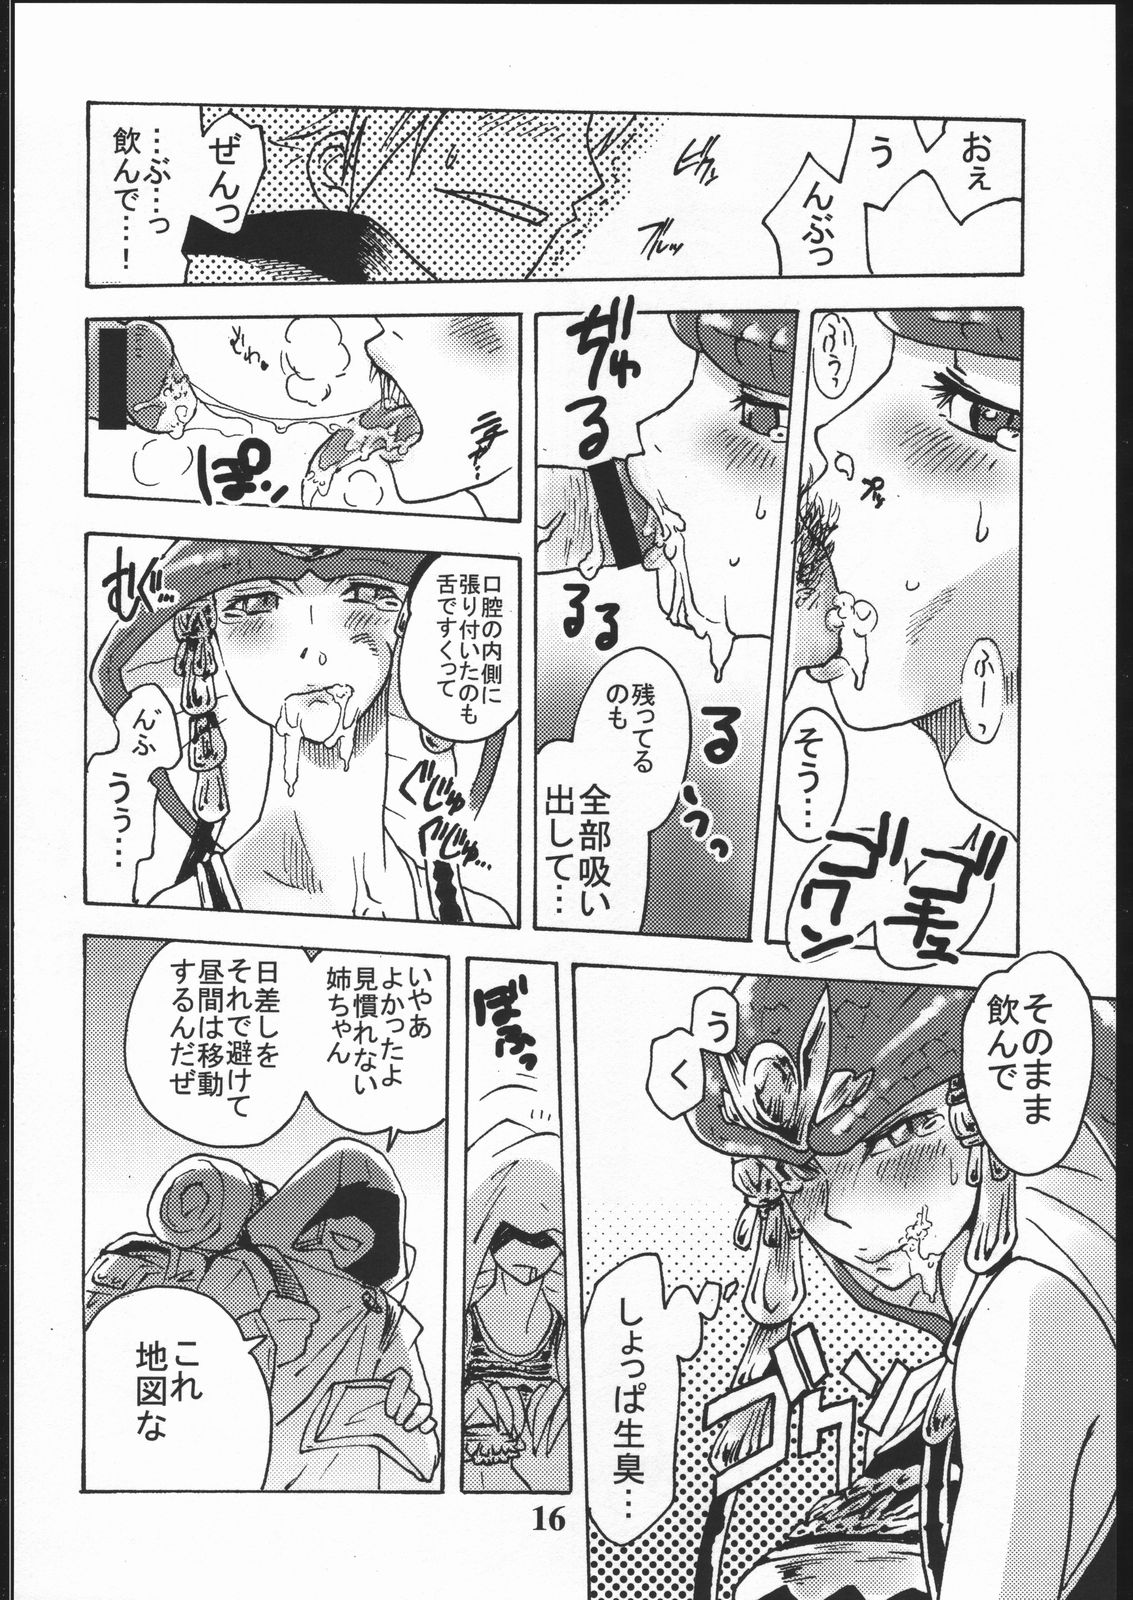 [Circle Daneko (Mr.pavlov)] GEDOH XI (Final Fantasy XI) page 15 full